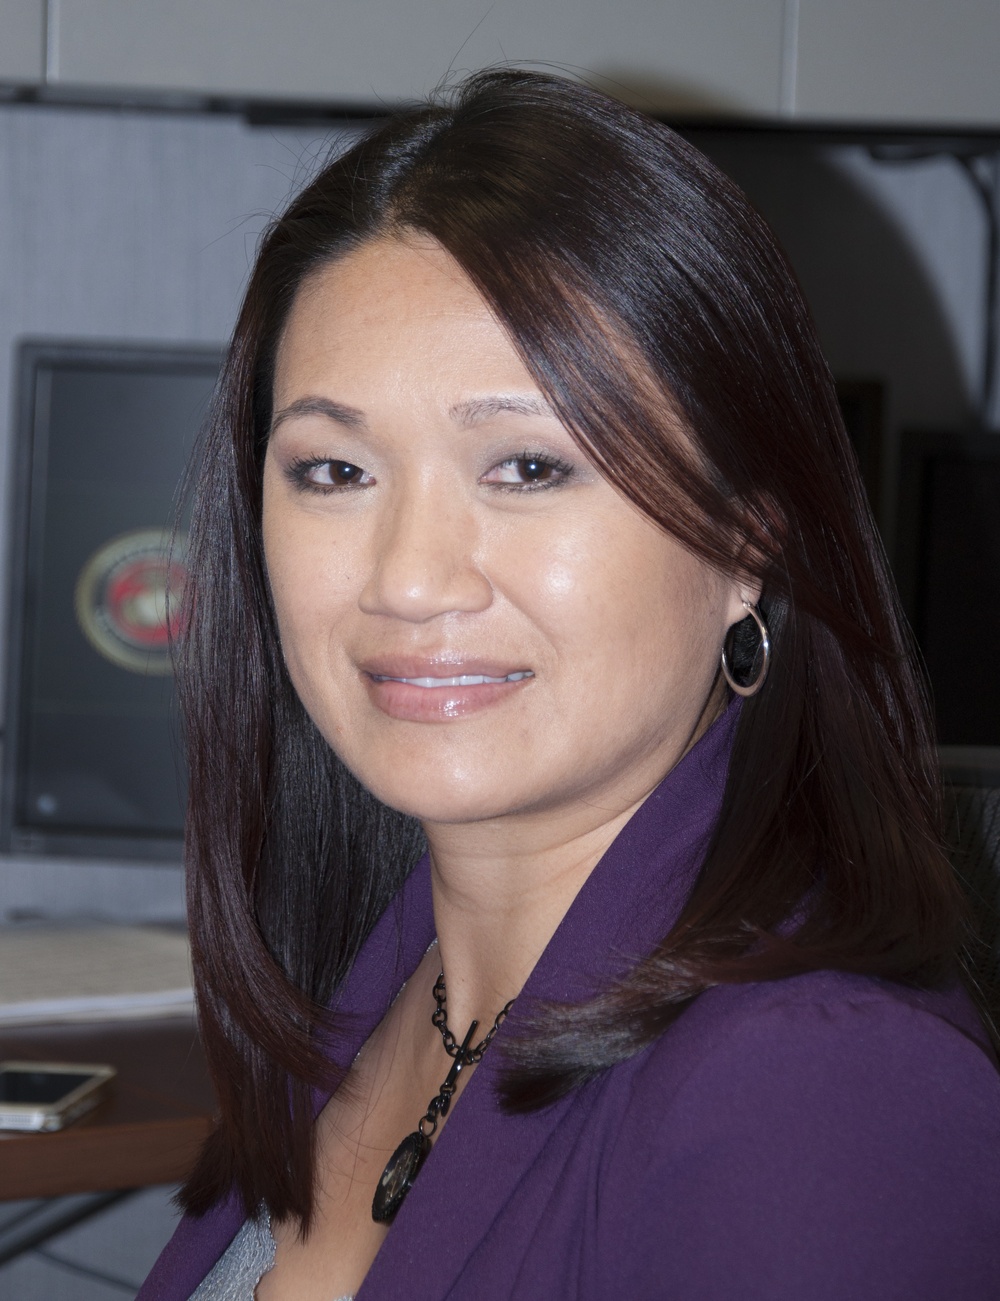 Phuoc Frisbie, Vietnamese, financial management analyst